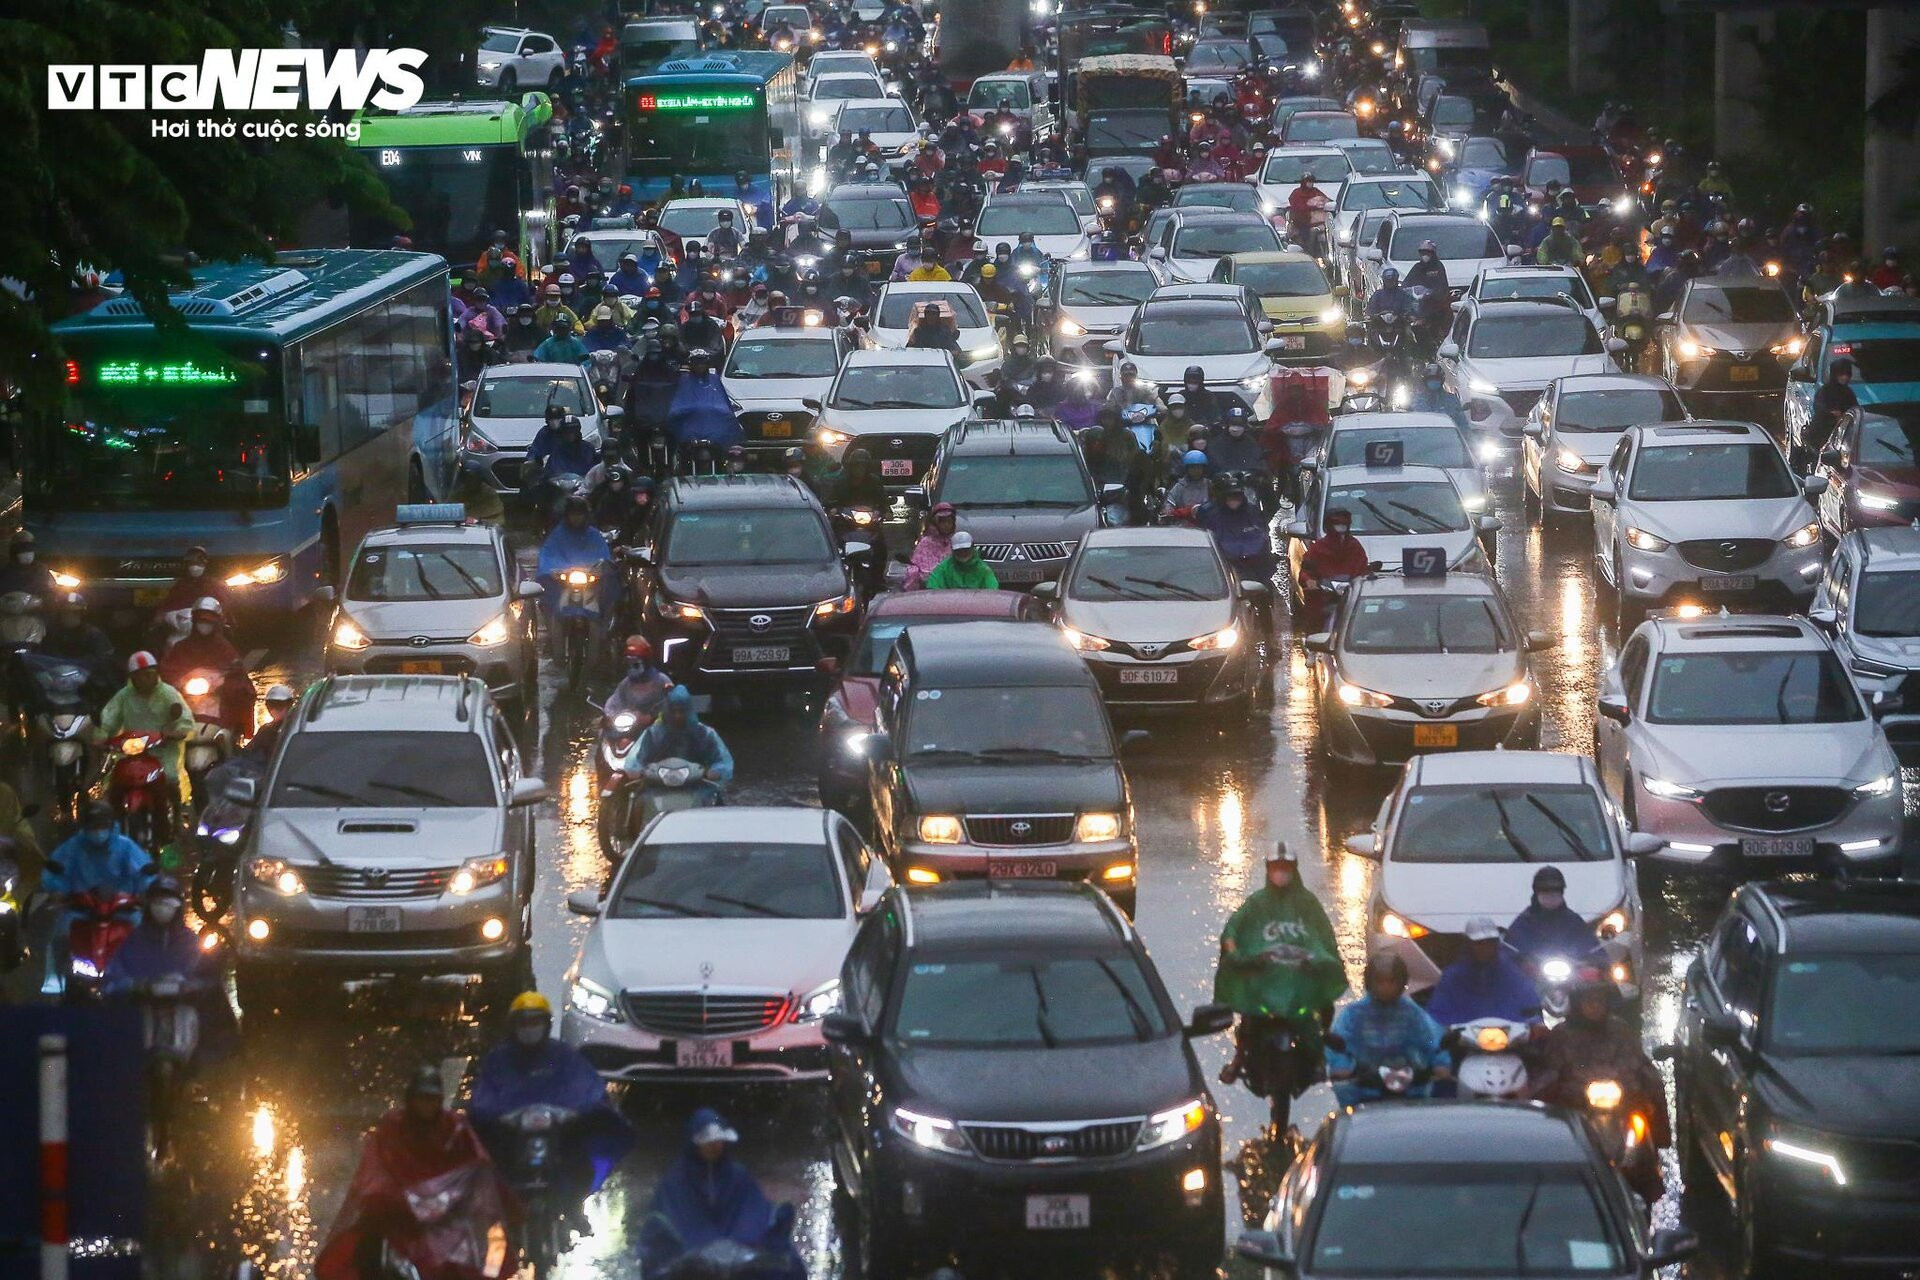 Đường phố Hà Nội hỗn loạn từ sáng đến tối vì mưa, người dân chật vật di chuyển - 1